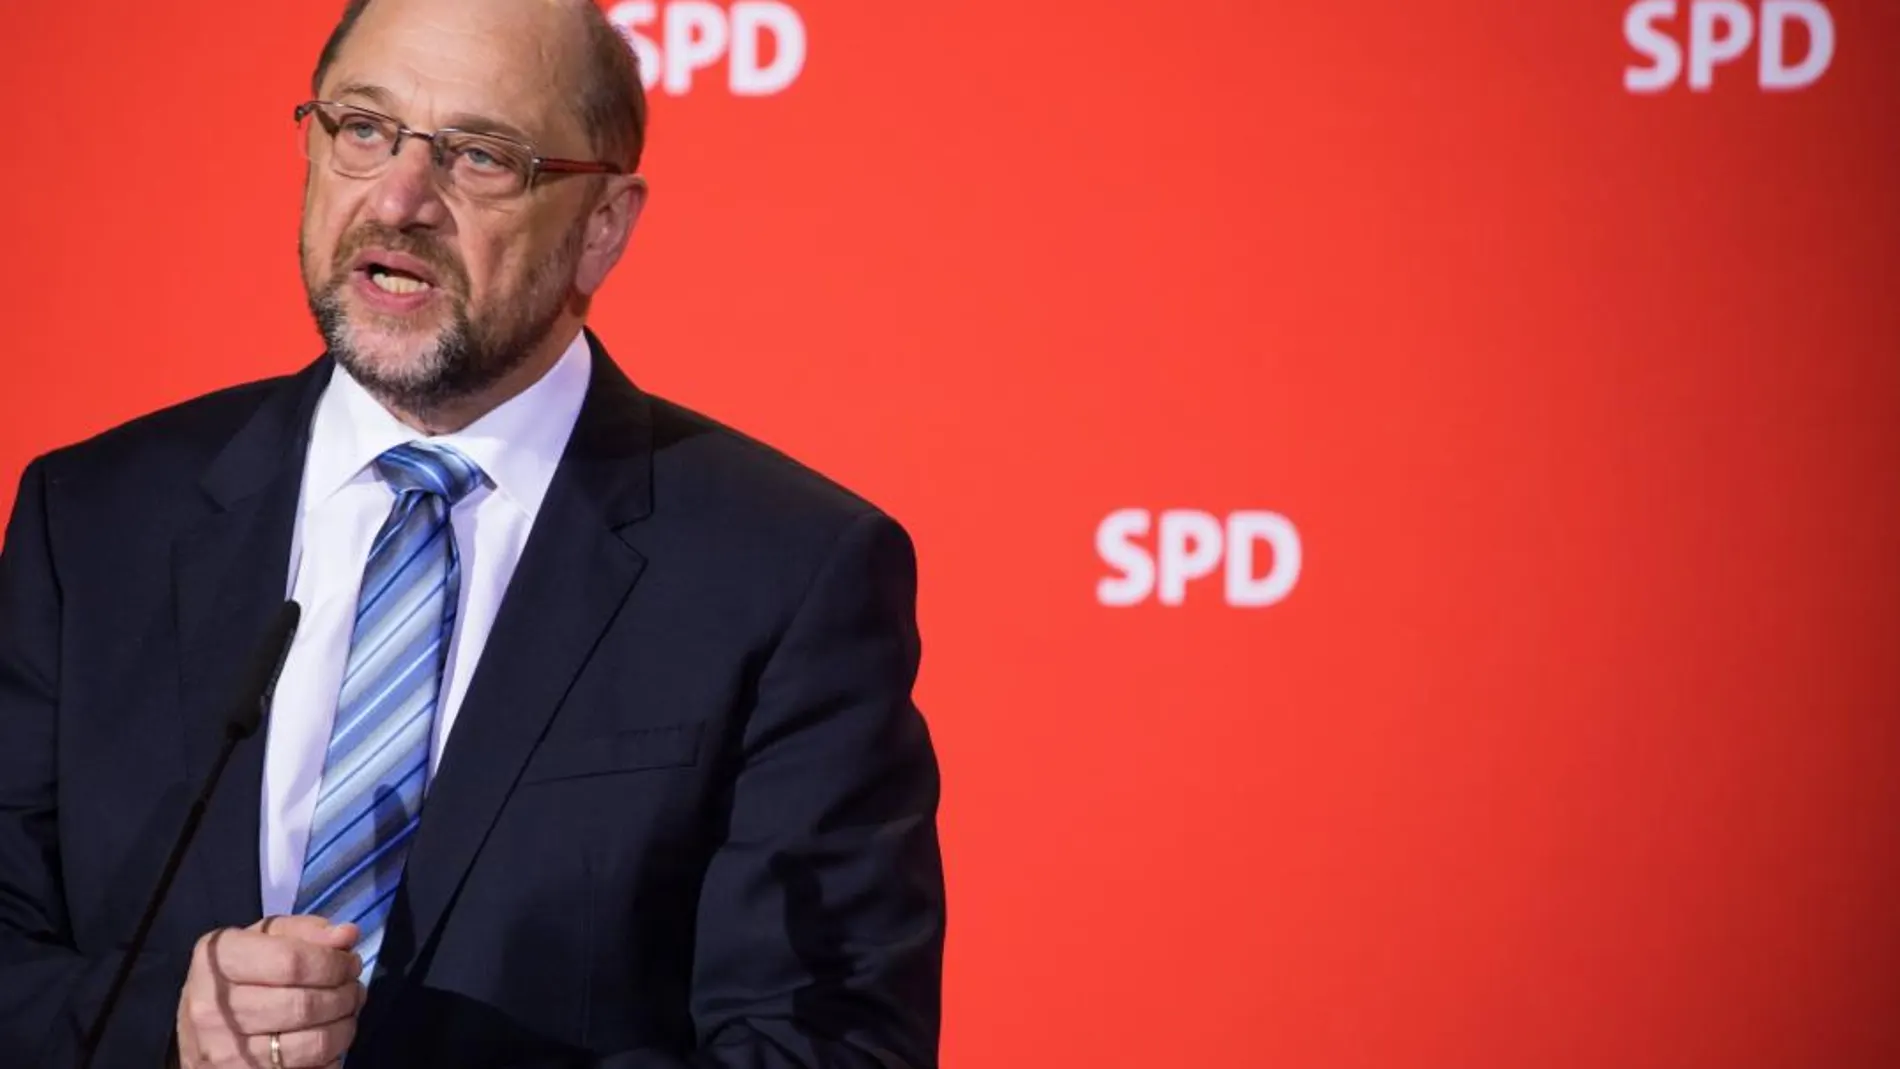 El líder del Partido Social Demócrata (SPD), Martin Schulz, habla durante una conferencia de prensa el pasado miércoles